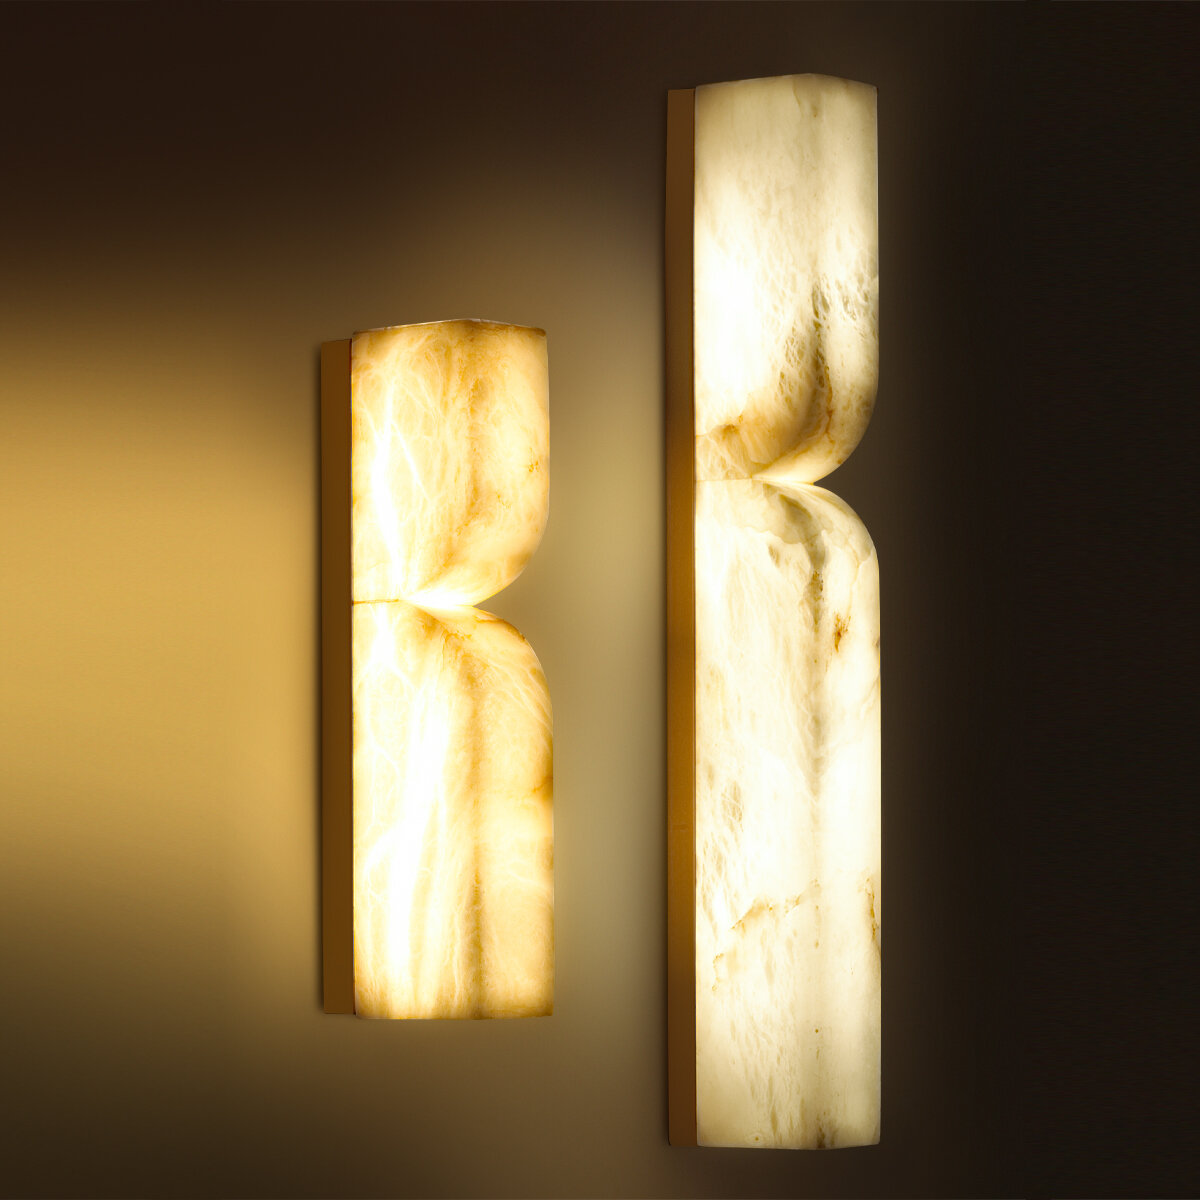 Marbella — линейка светодиодных светильников в базовых формах, выполненных из алебастра